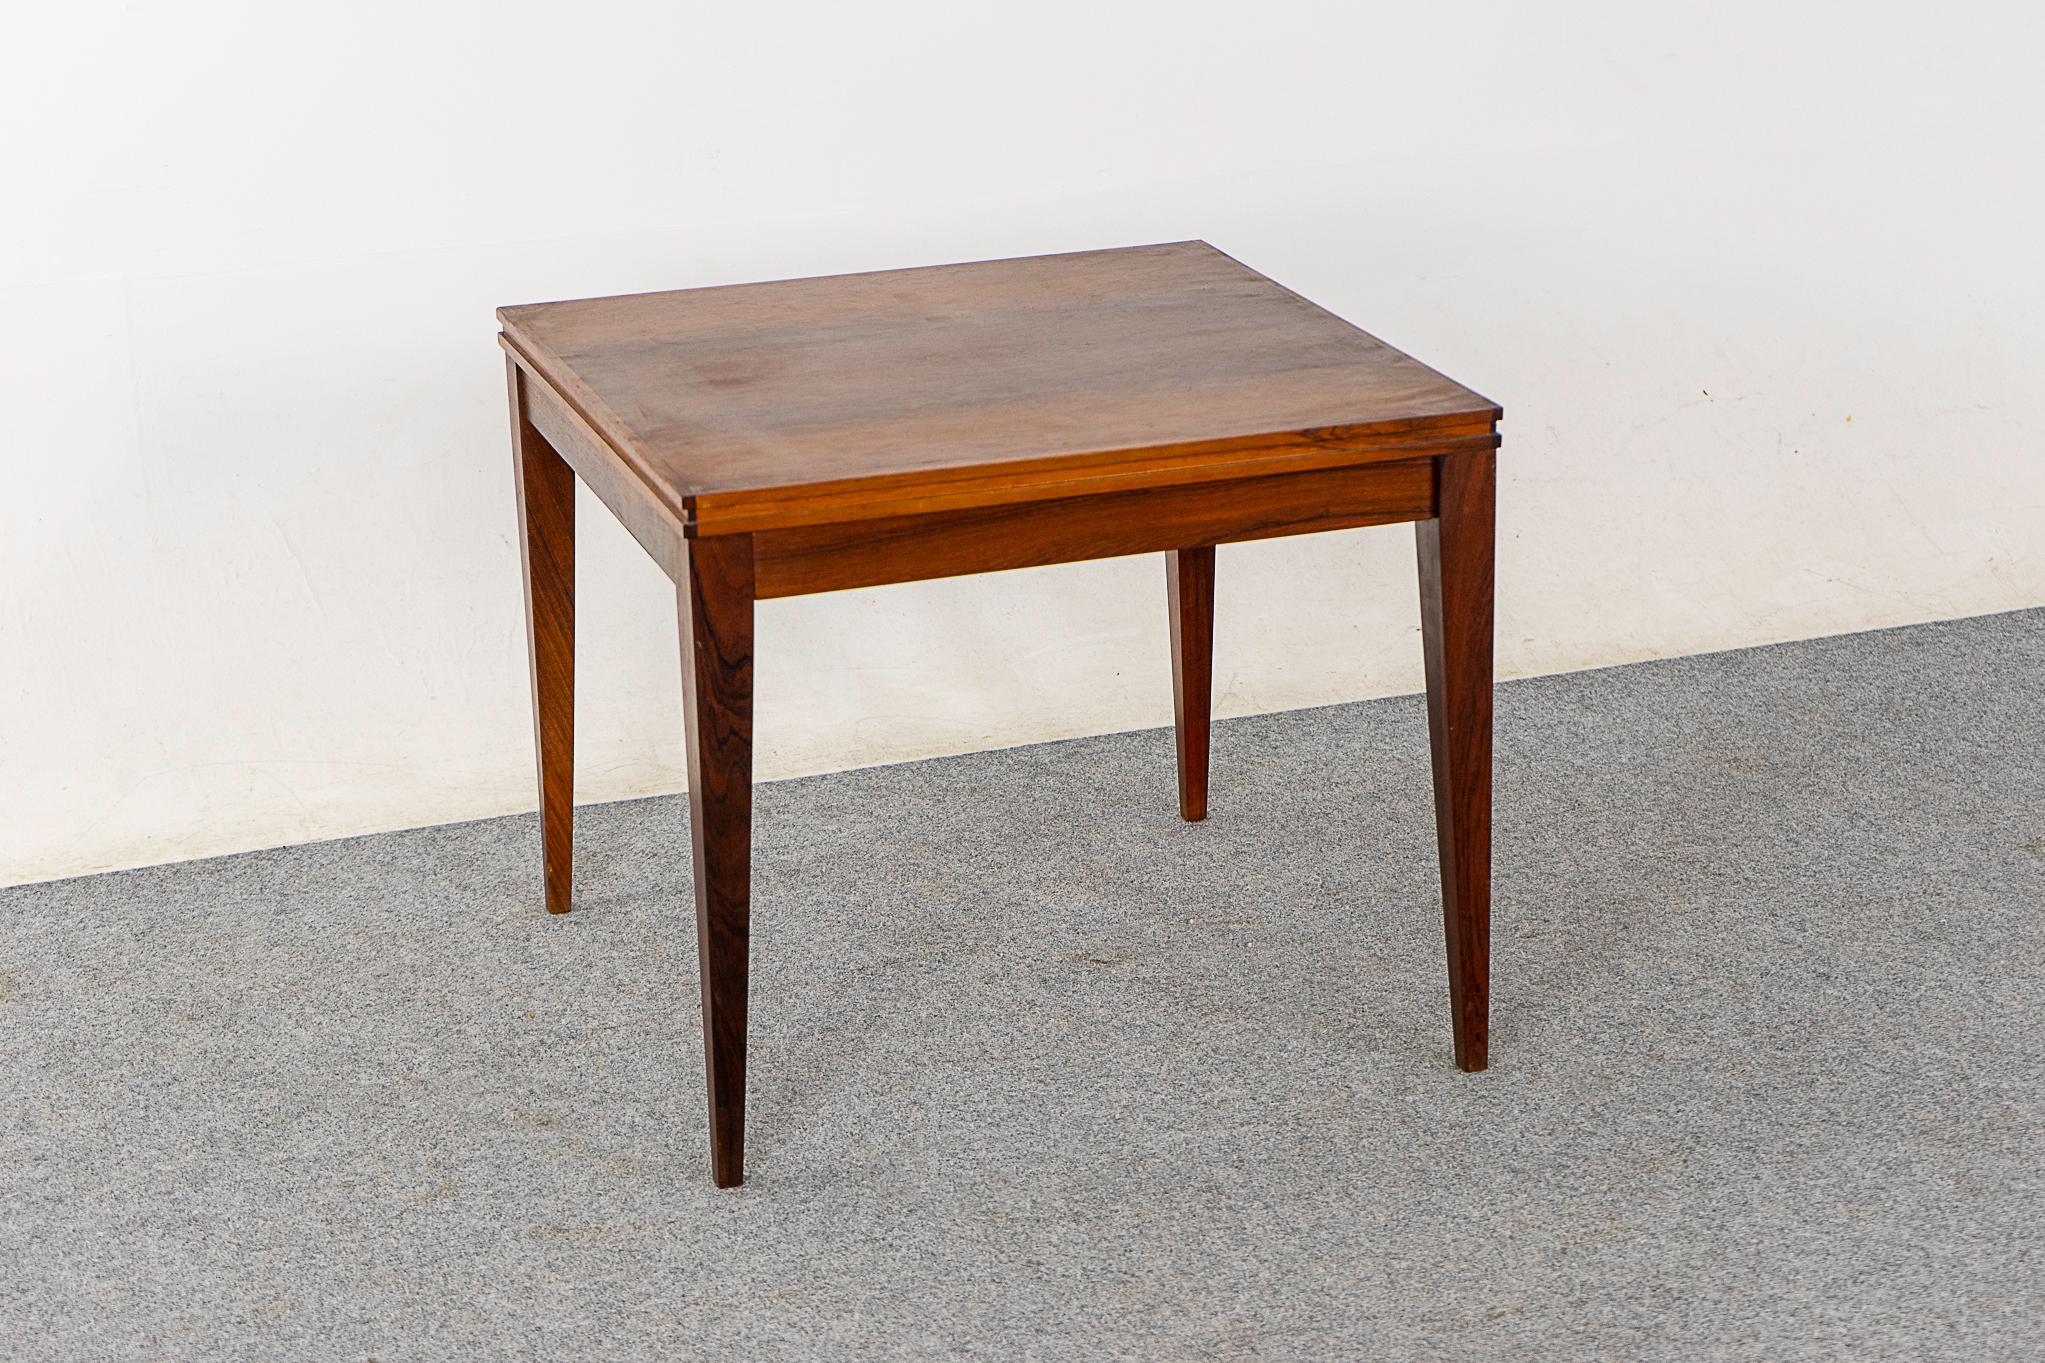 Beistelltisch aus Palisanderholz aus der Mitte des Jahrhunderts, ca. 1960er Jahre. Kompakter, hochfunktioneller Tisch mit schlanken, spitz zulaufenden Beinen. Passt perfekt zu großen Sofas!

Bitte erkundigen Sie sich nach den Tarifen für den